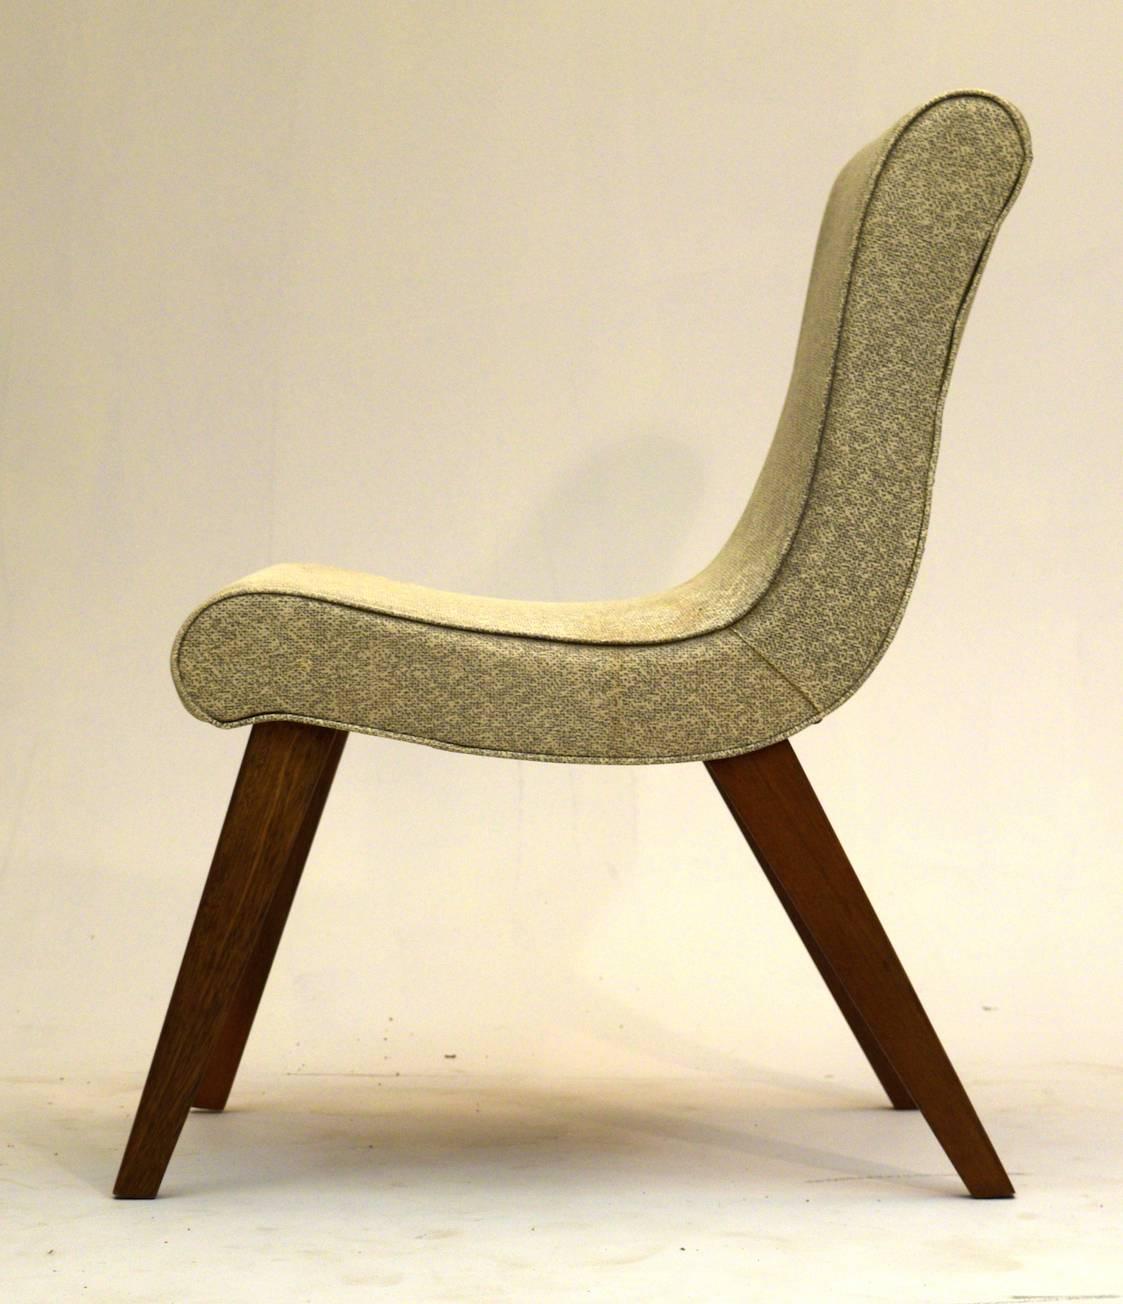 Ein sehr früher Stuhl, der Jens Risom für Knoll zugeschrieben wird.

Der Stuhl verfügt über eine Art Vinyl-Finish, das in gutem Zustand mit ein paar Flecken und leichte Flecken ist. Die Beine wurden vor kurzem wieder am Rahmen befestigt und können